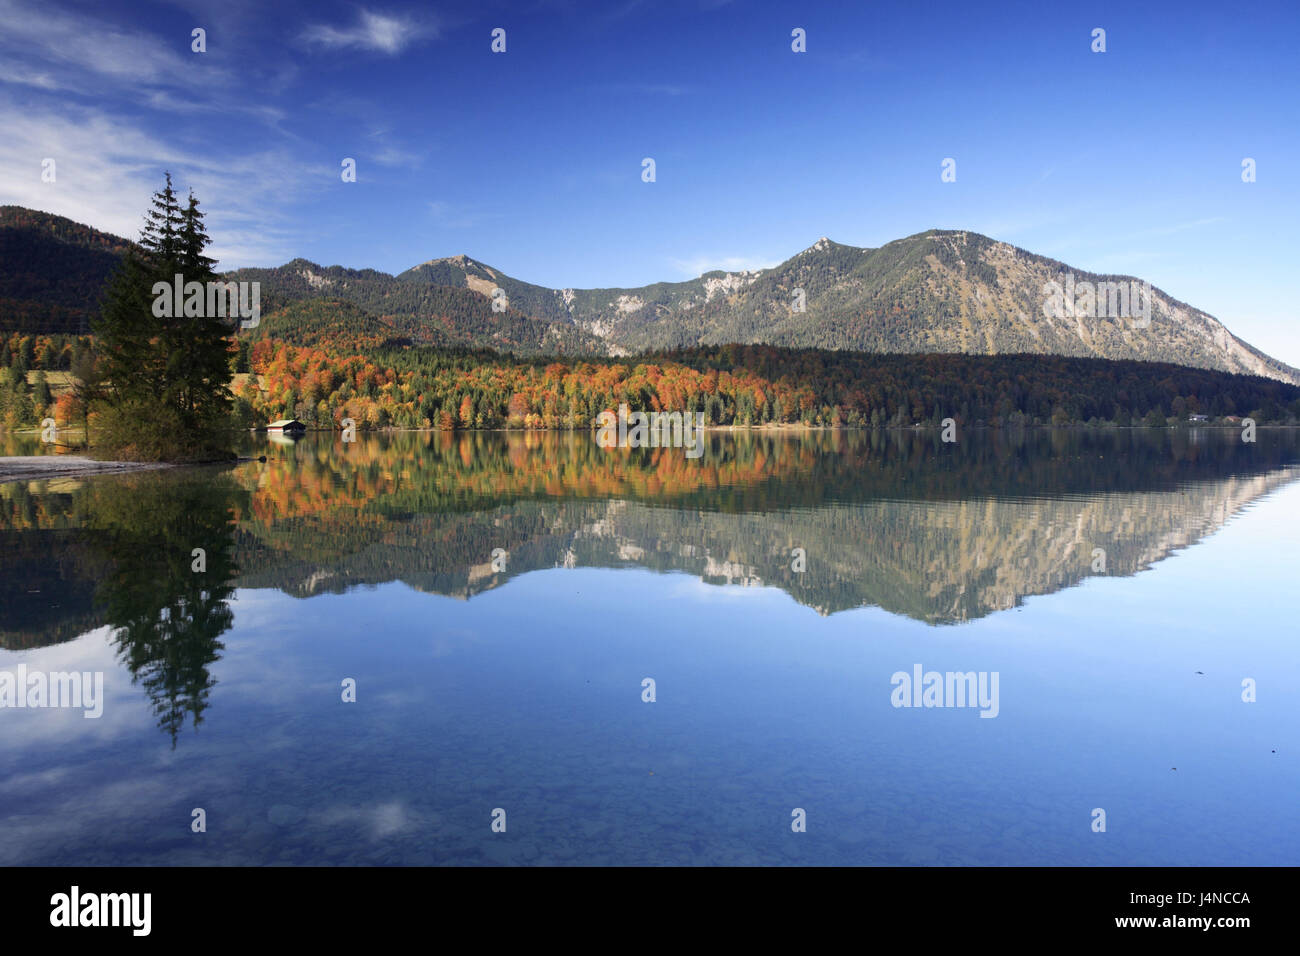 Germany, Bavaria, Walchensee, mountains, mirroring, autumn, Stock Photo